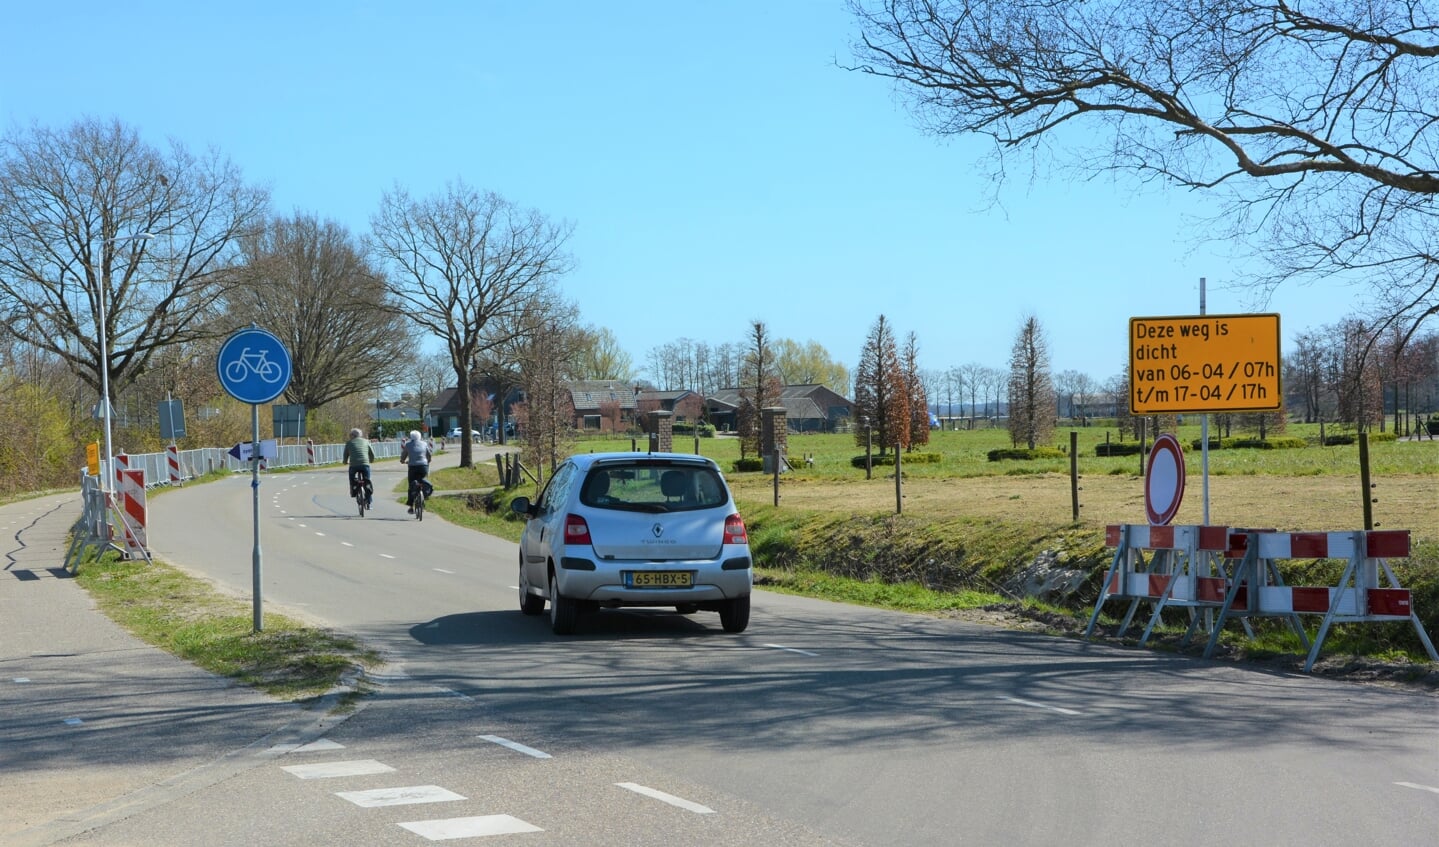 Vanaf a.s Maandag 6 April zal de Hessenweg vanaf de Klettersteeg richting Barneveld worden afgesloten